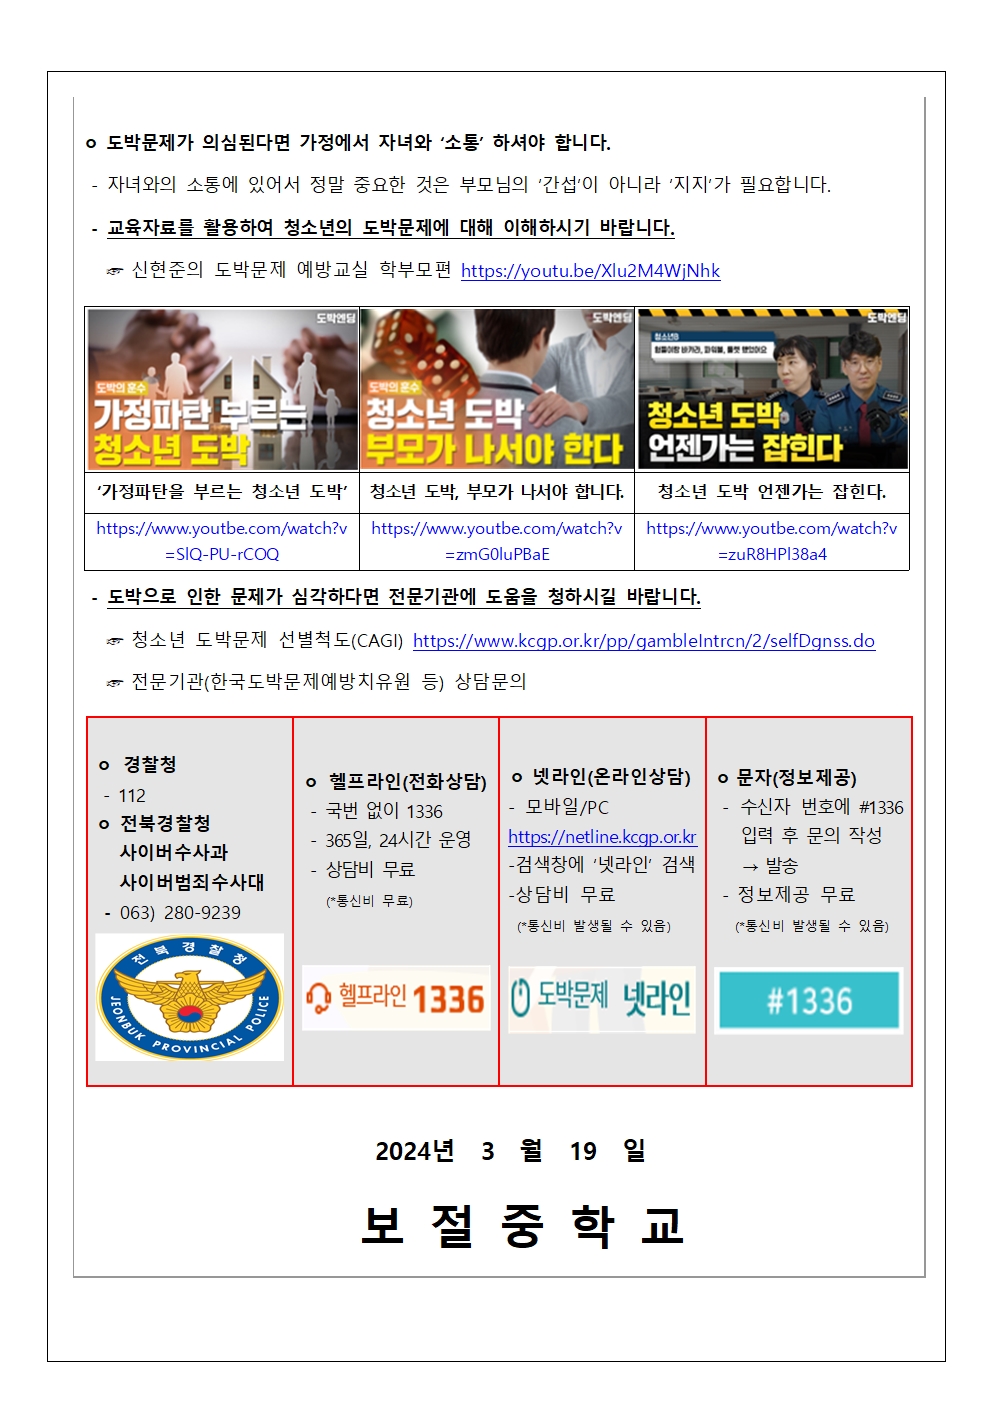 청소년 사이버 도박문제 피해 예방 가정통신문-보절중002